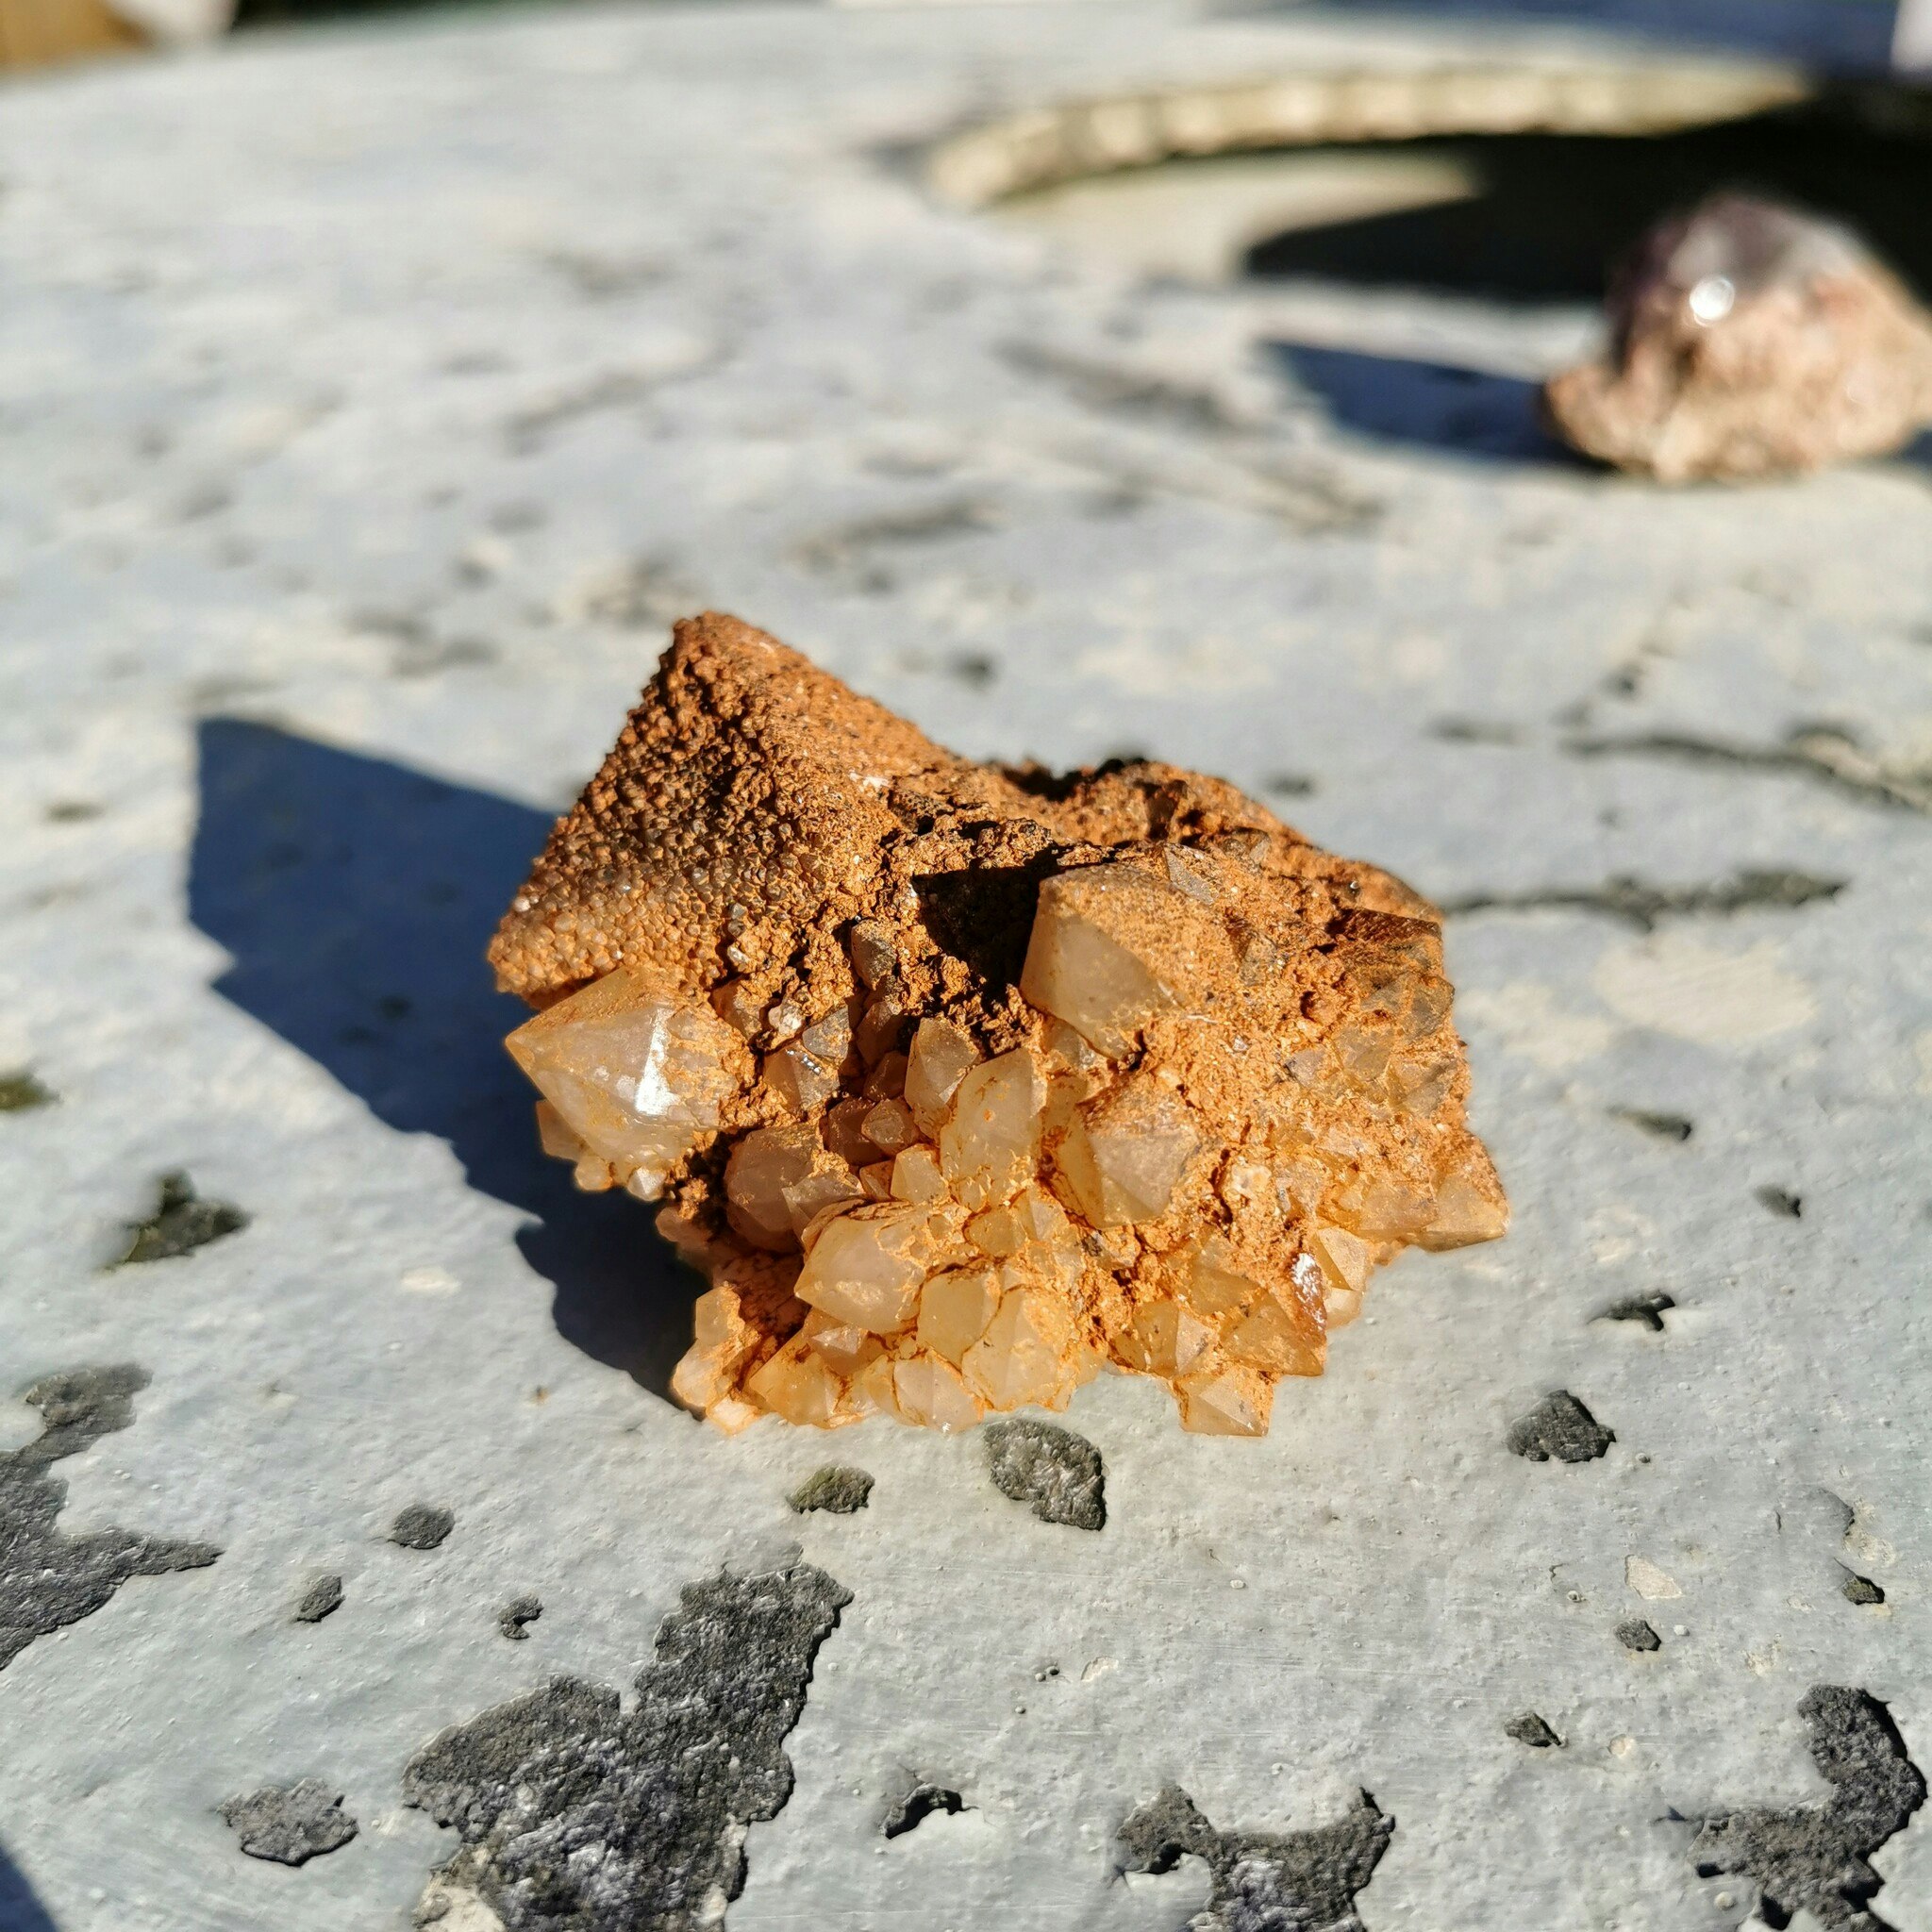 Unikt bergkristall kluster med flourit kub, täckta med sandliknande material